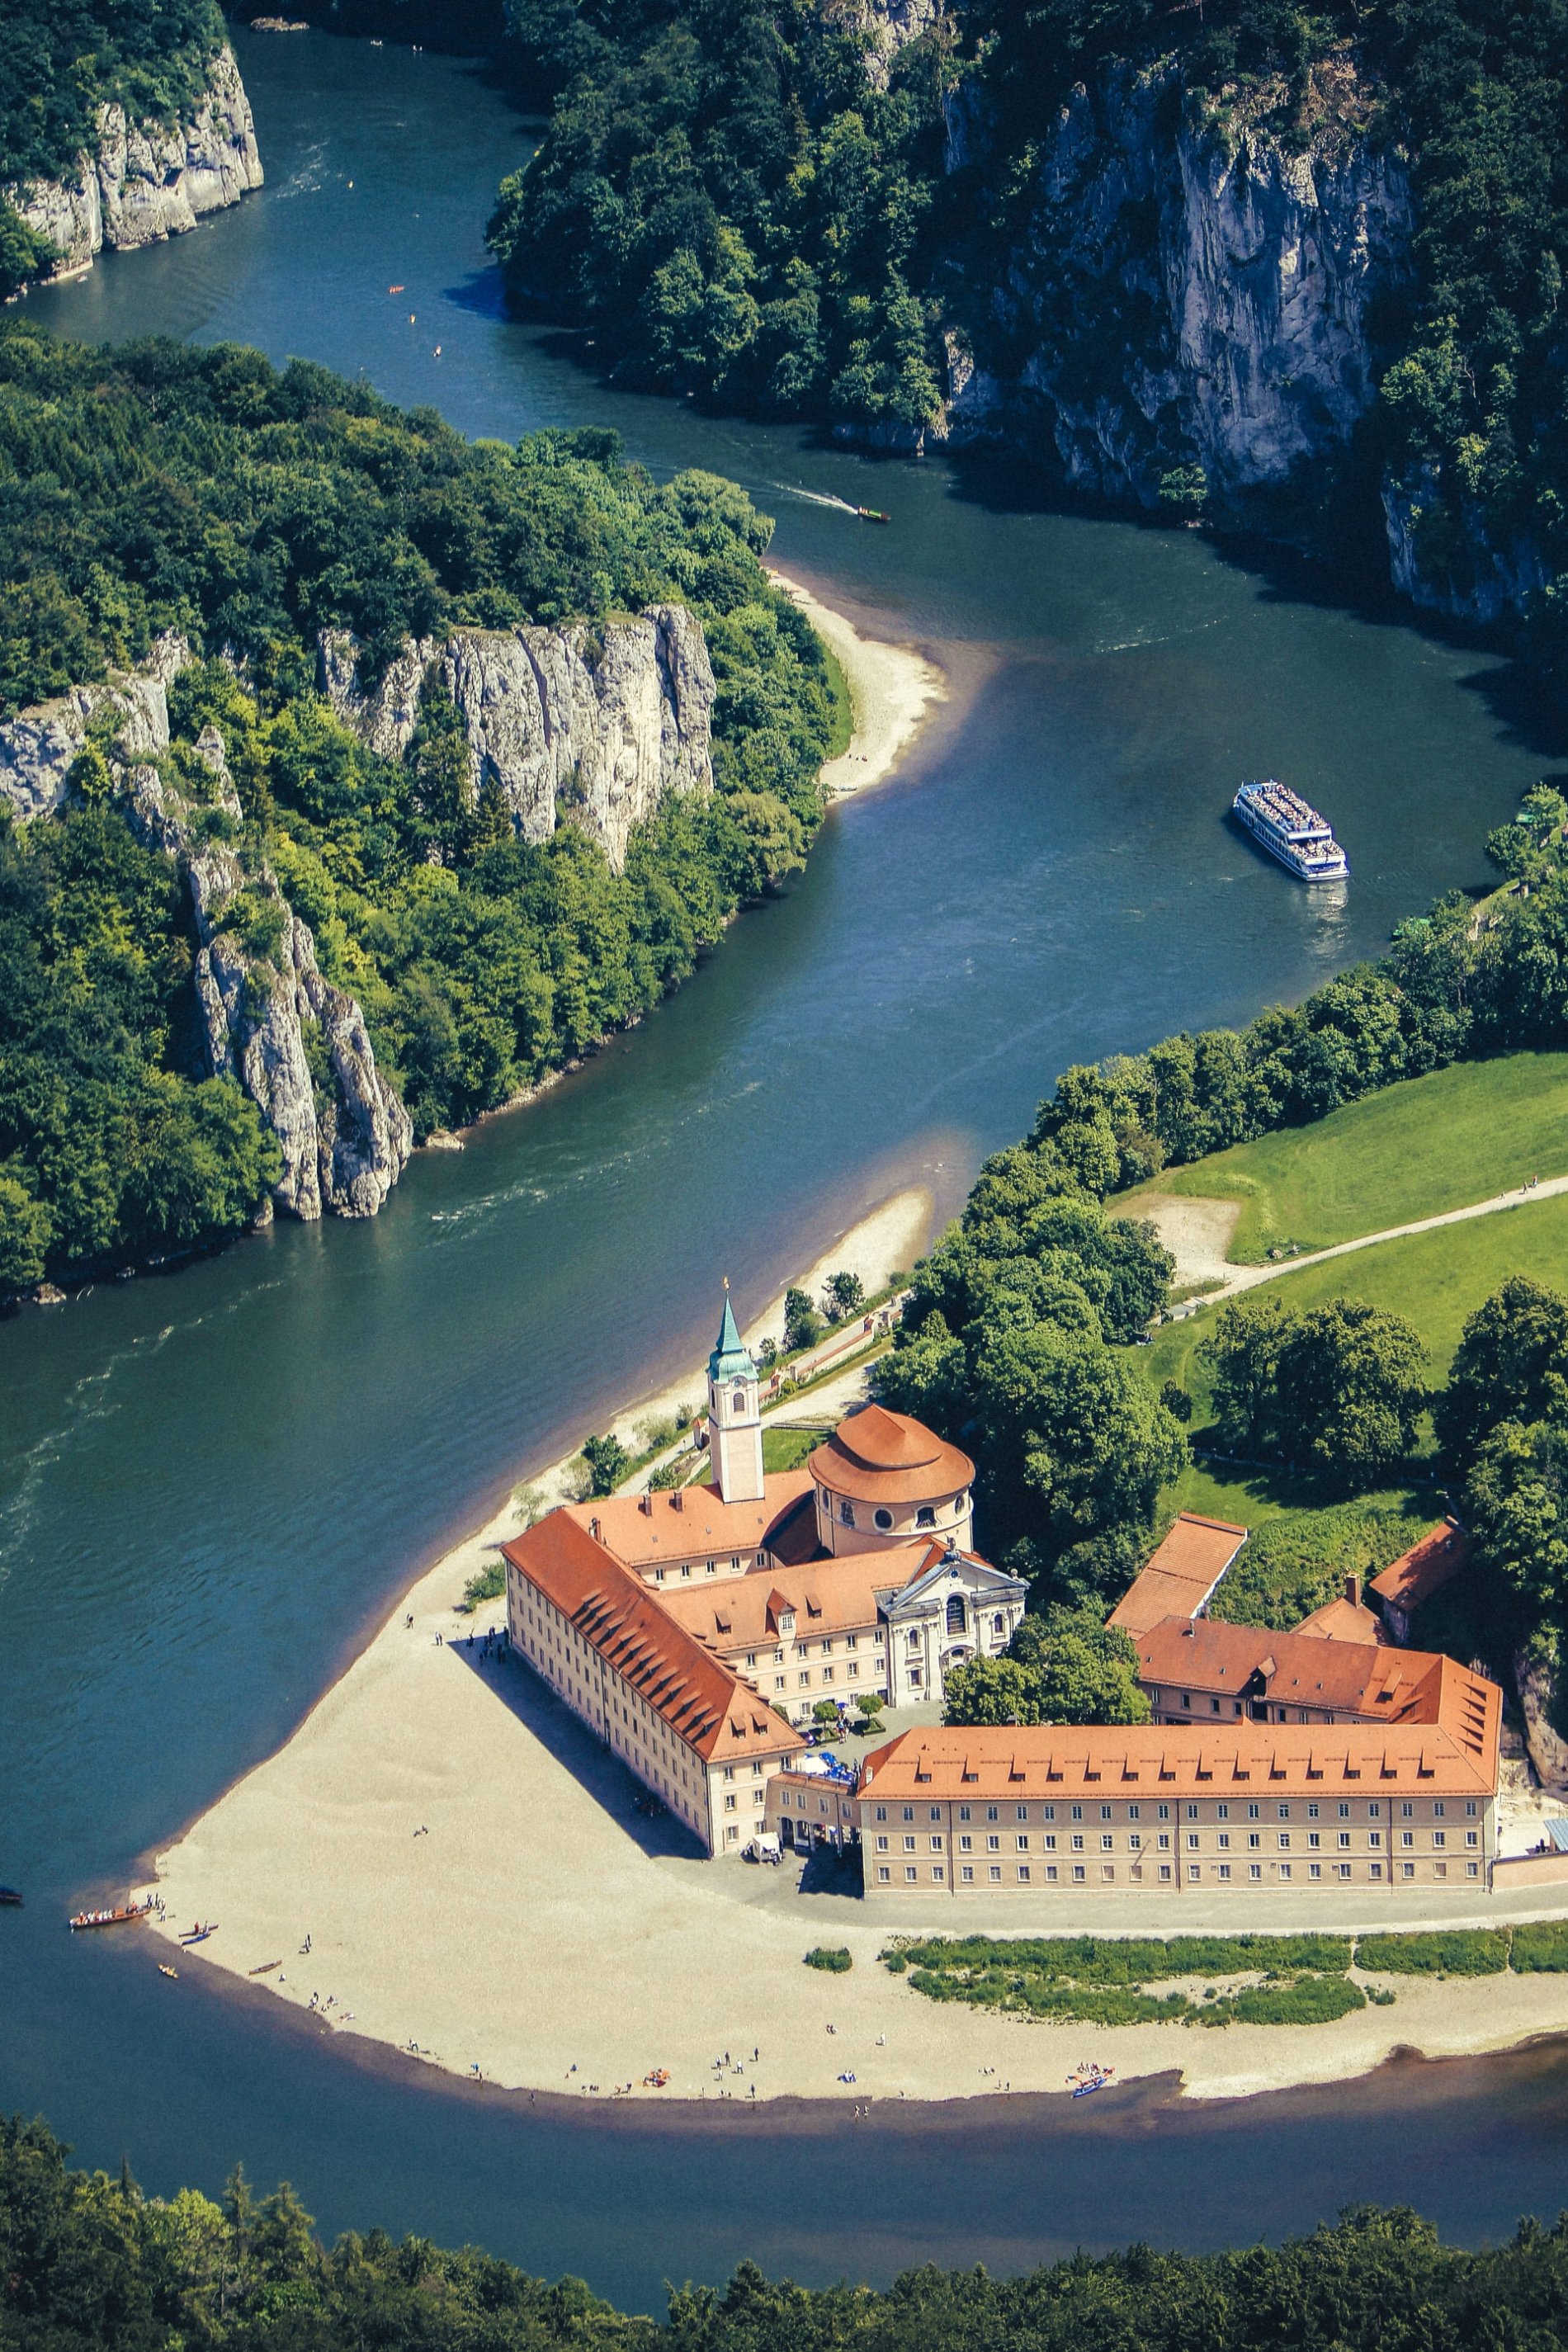 Kloster Weltenburg liegt an der Donau. Auf der Donau fahren ein Schiff und Boote. Die Donau schlängelt sich durch die mit Bäumen bewachsenen Felsen im Naturschutzgebiet Weltenburger Enge.